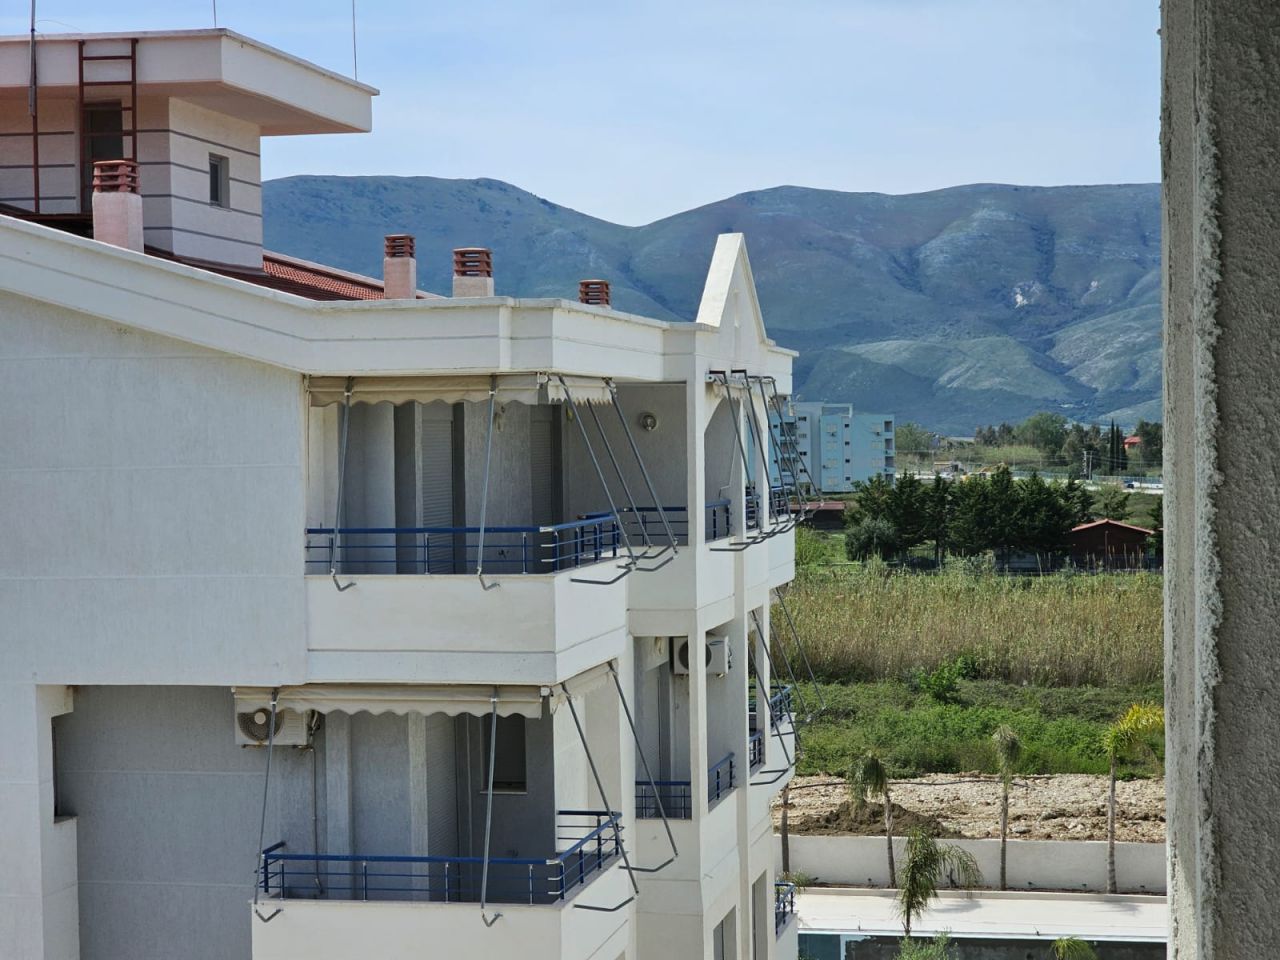 Квартира на продажу во Влёре, Албания, расположенная в панорамном районе, недалеко от пляжа